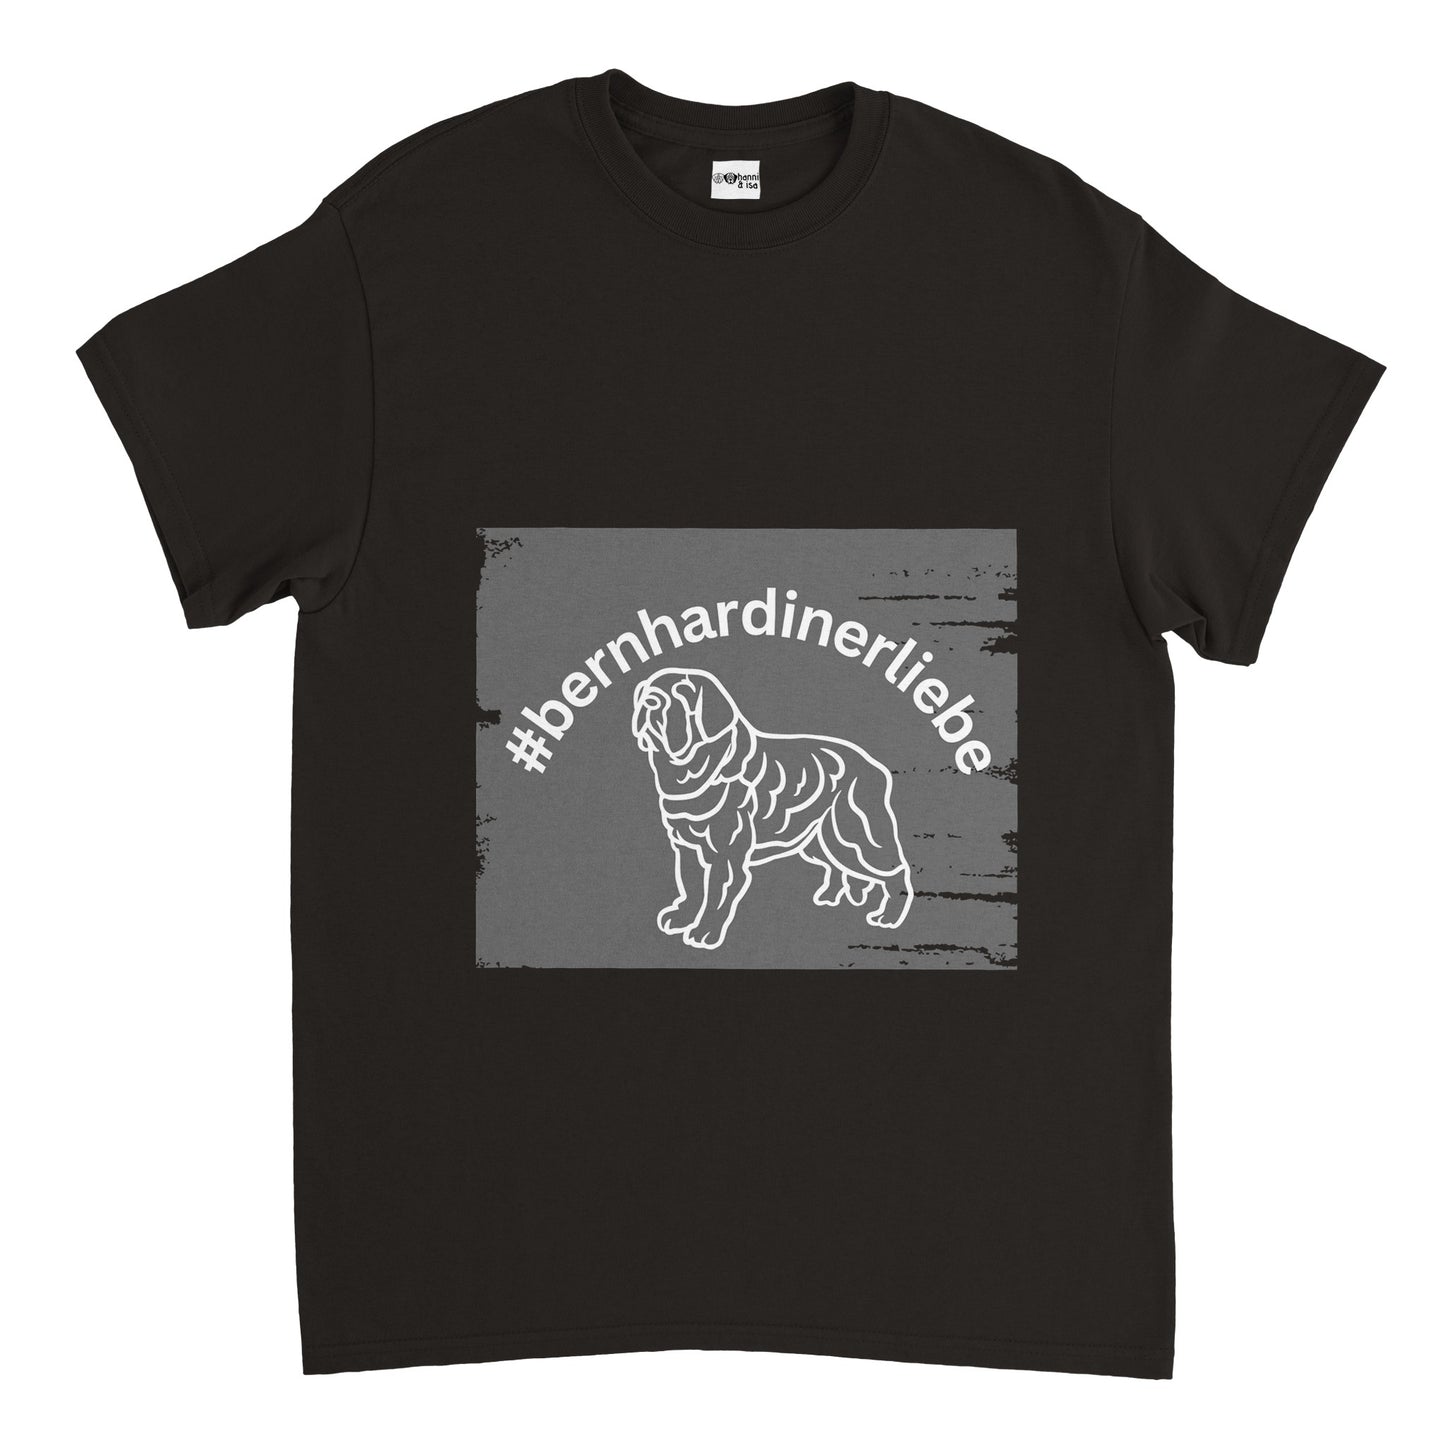 Saint Bernard Love Tom Men's T-Shirt